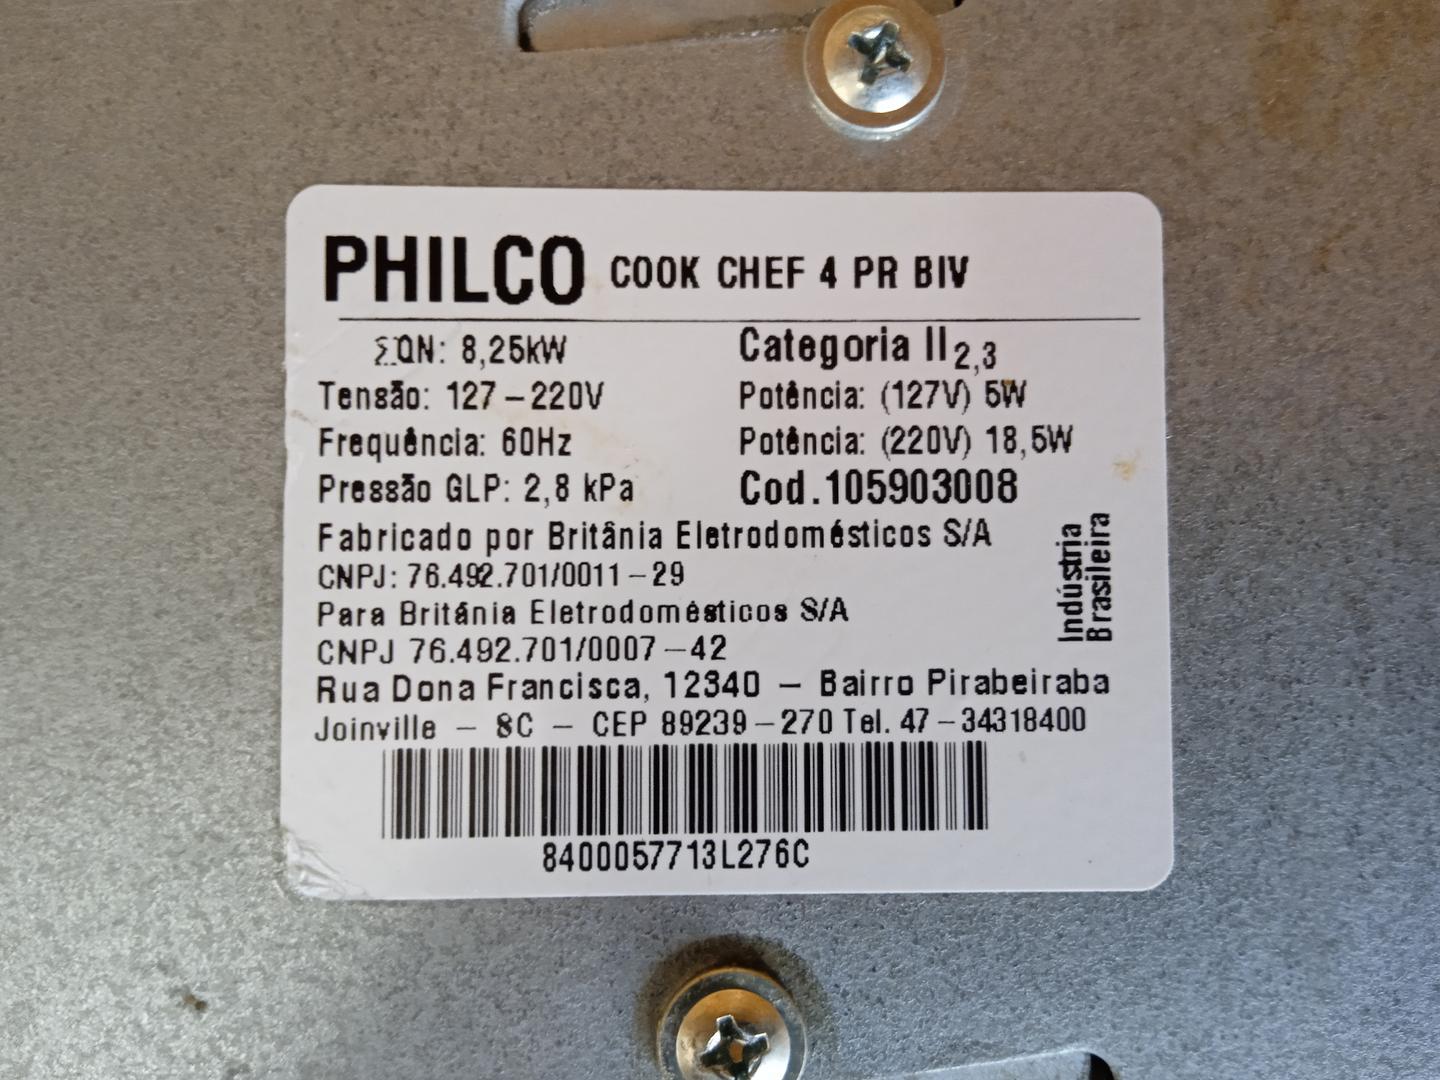 Cooktop Philco Chef 4 PR BIV em Aço / Vidro Preto 15 cm x 59 cm x 46 cm